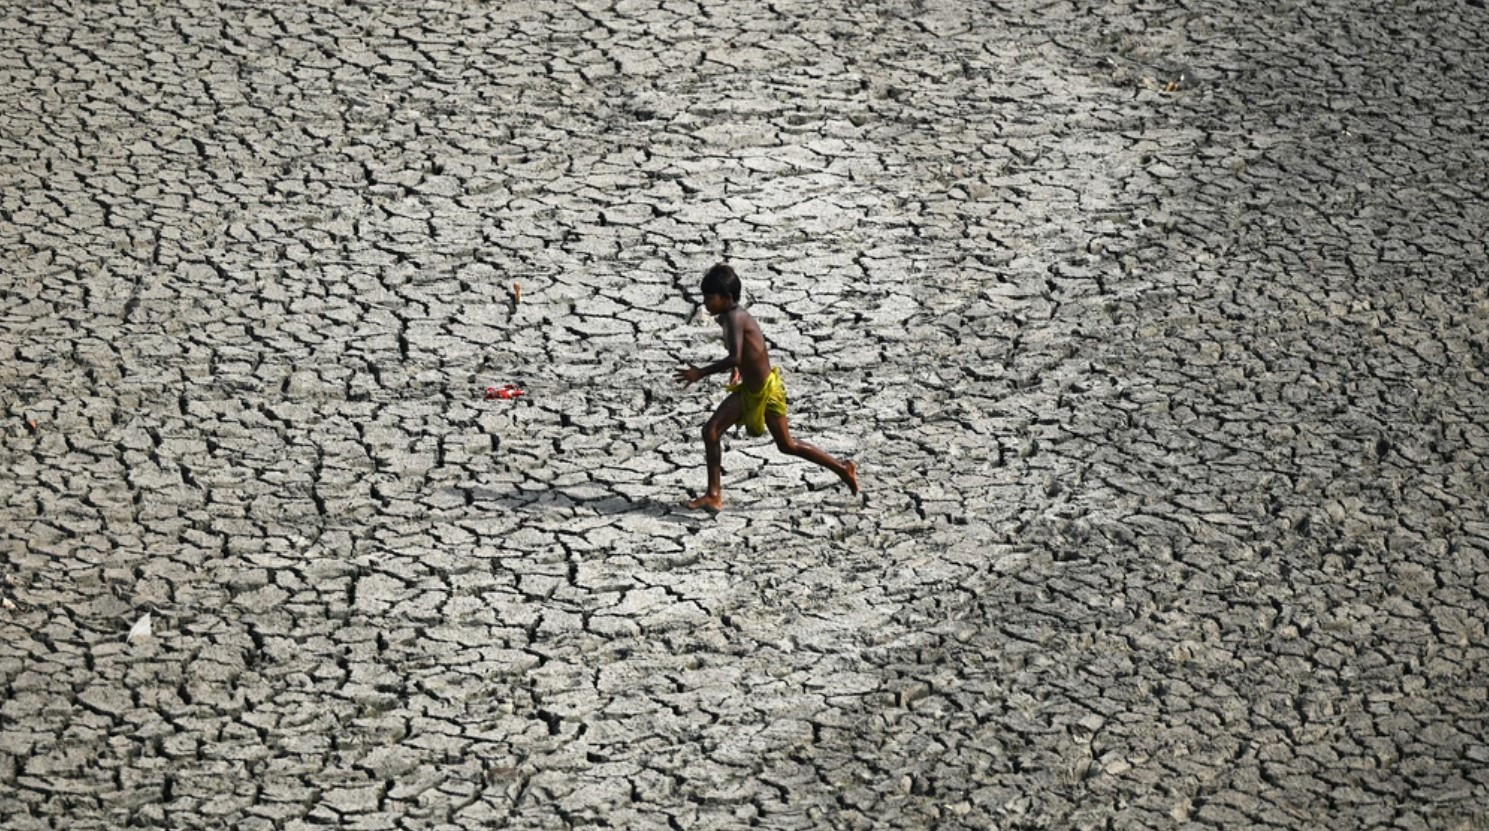 Một cậu bé chạy ngang qua vùng đáy sông khô cằn của Yamuna, con sông phụ lưu dài nhất của Ấn Độ. Ảnh: VICE.